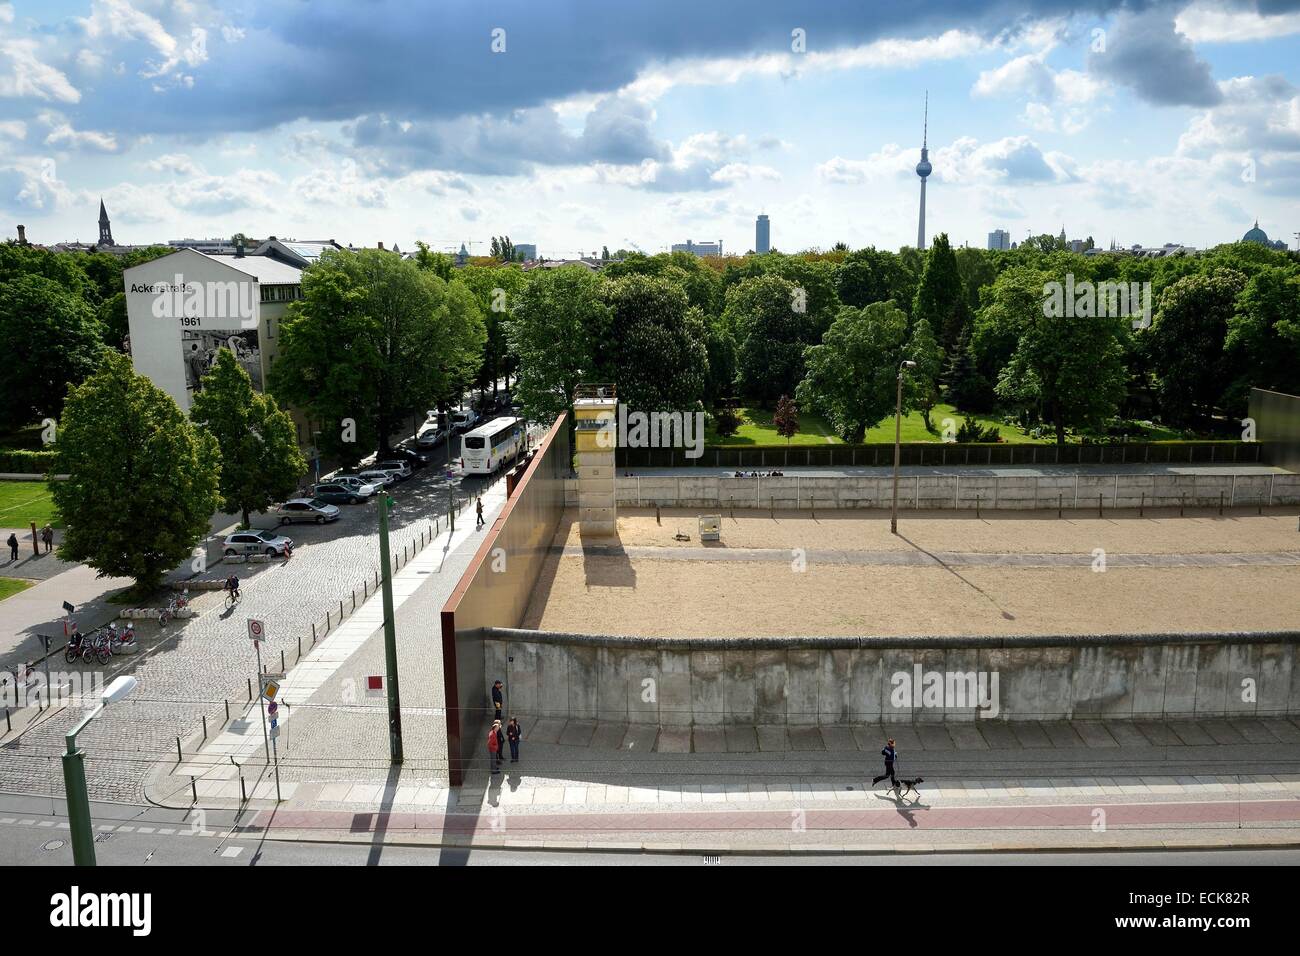 Allemagne, Berlin, Bernauer Strasse, Mémorial du Mur de Berlin (Berliner Mauer) GedenkstΣtte, dernier tronçon du Mur de Berlin encore préservée dans son intégralité avec le mur intérieur, la passerelle, la watchtower, pylônes d'éclairage, le no man's land, le signal Banque D'Images